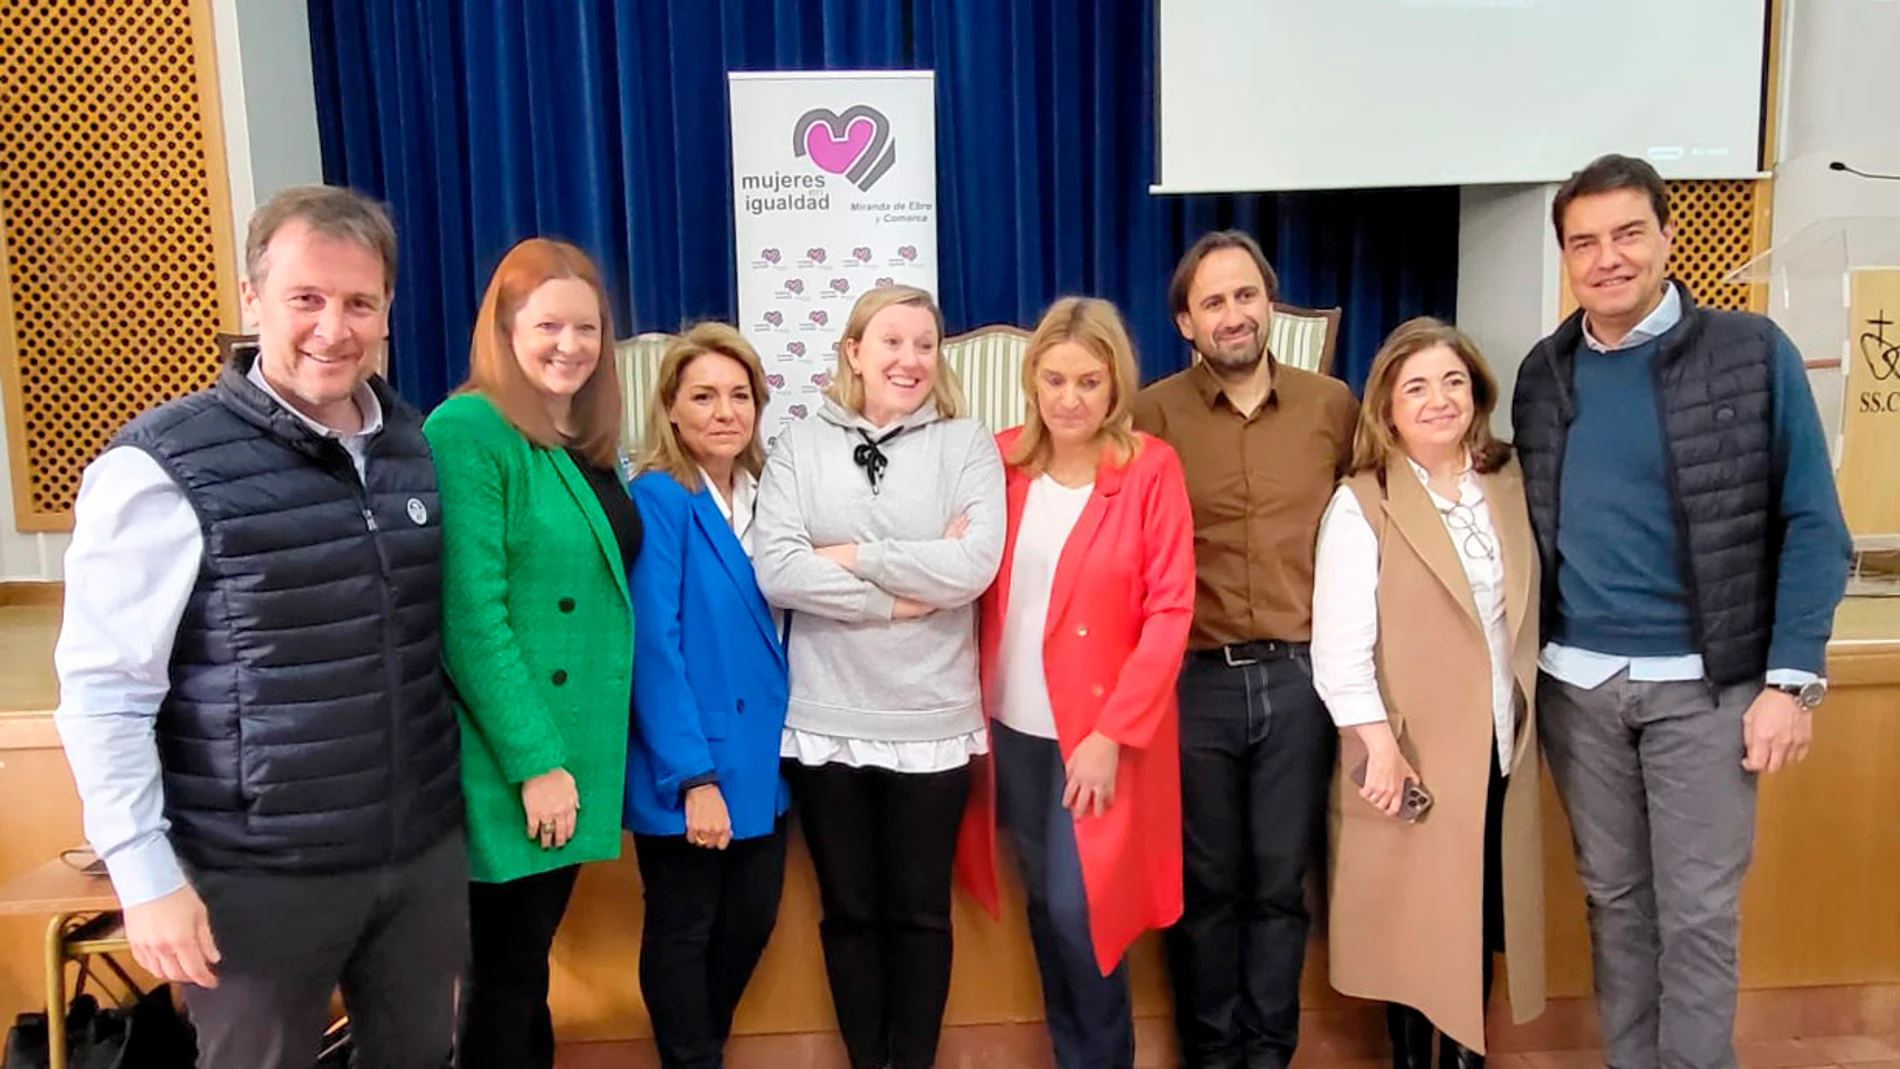 La consejera de Familia e Igualdad de Oportunidades, Isabel Blanco, participa en Miranda de Ebro (Burgos) el I Encuentro Regional de Mujeres en Igualdad